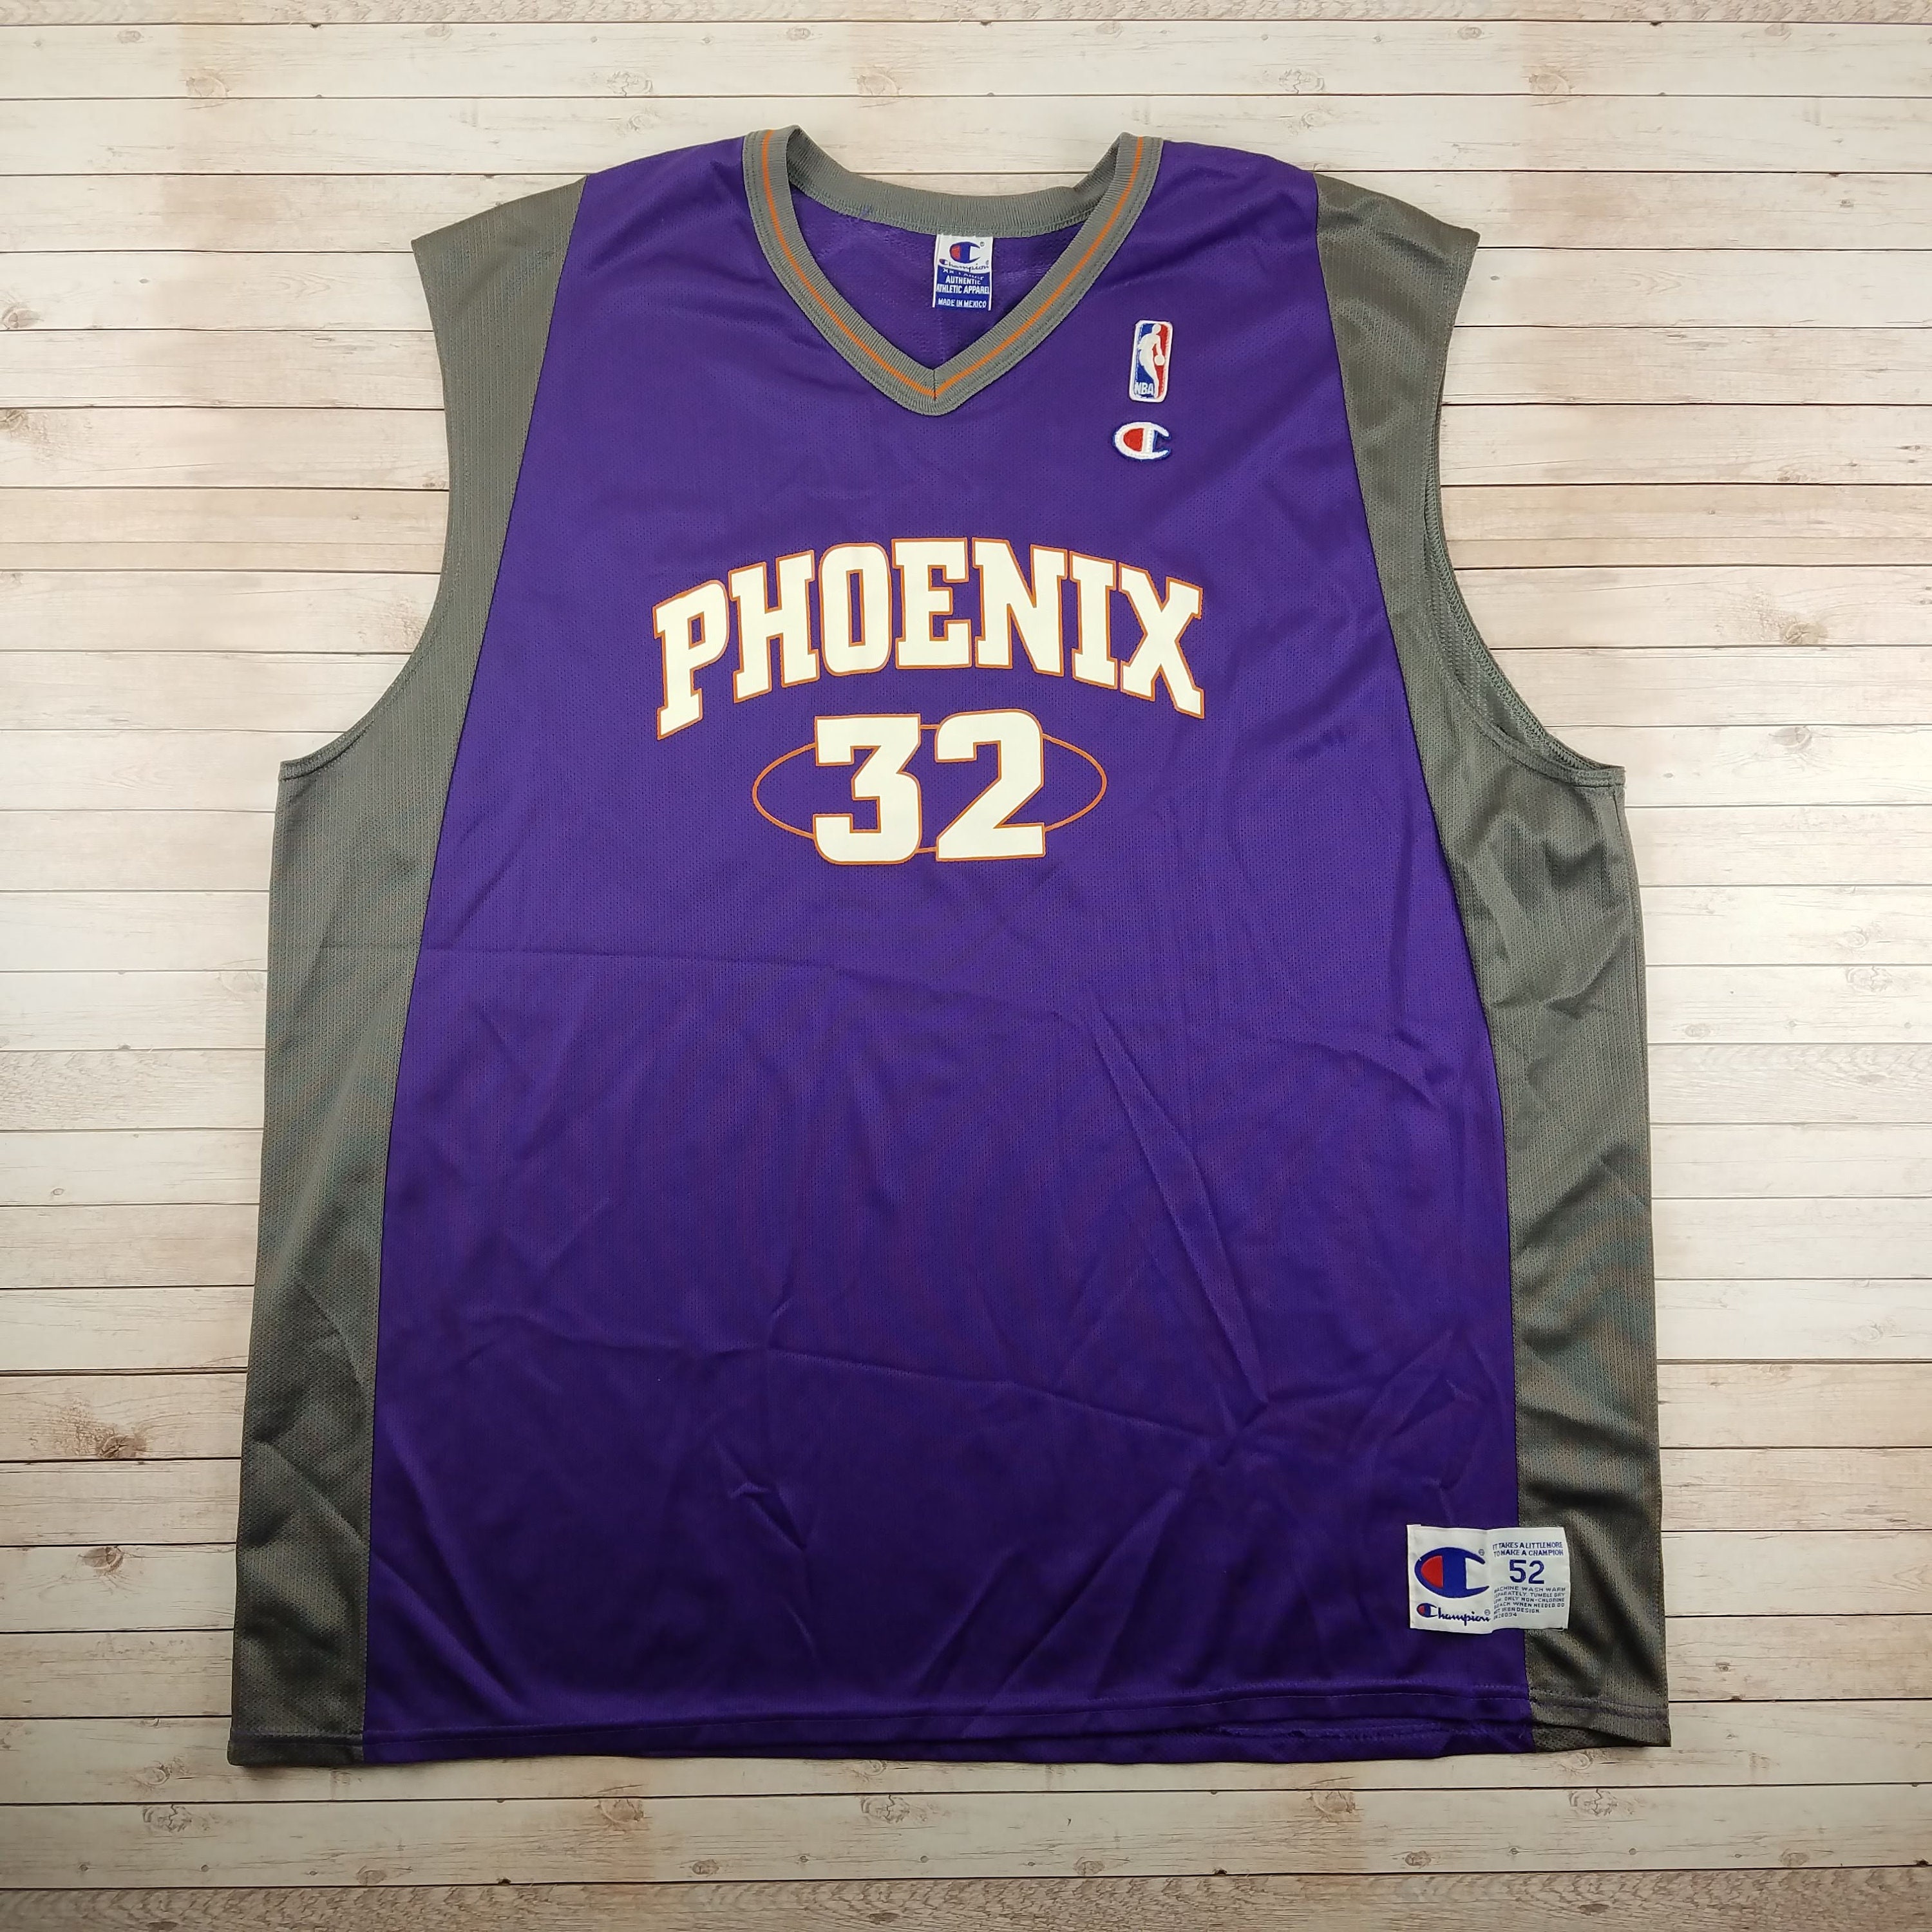 Jason Kidd Phoenix Suns Champion Basketball Jersey Nba 56 Stitched